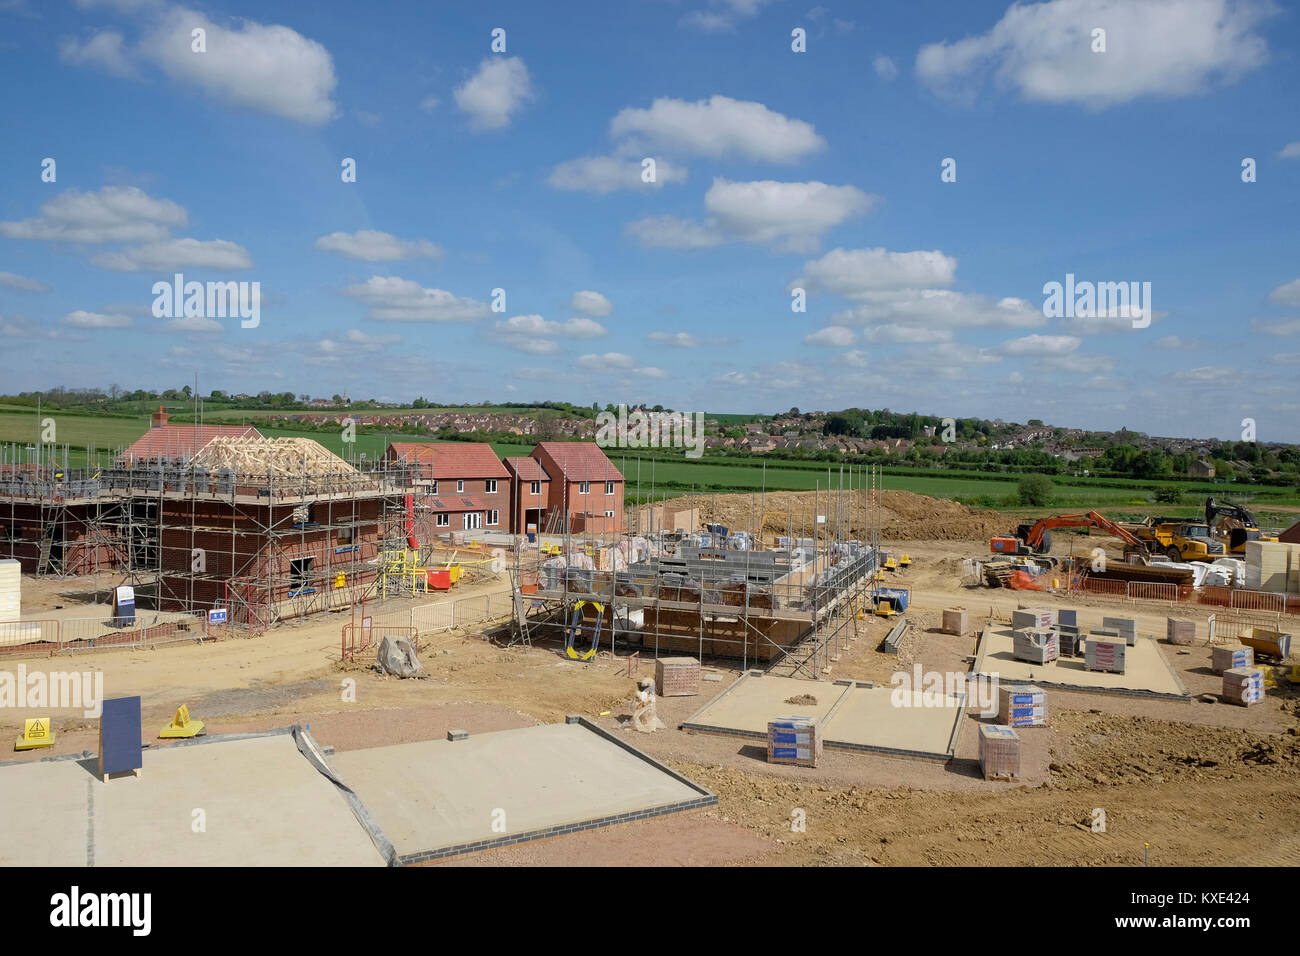 La construction de nouveaux logements estate, Grantham, Lincolnshire, Angleterre Royaume-uni Banque D'Images